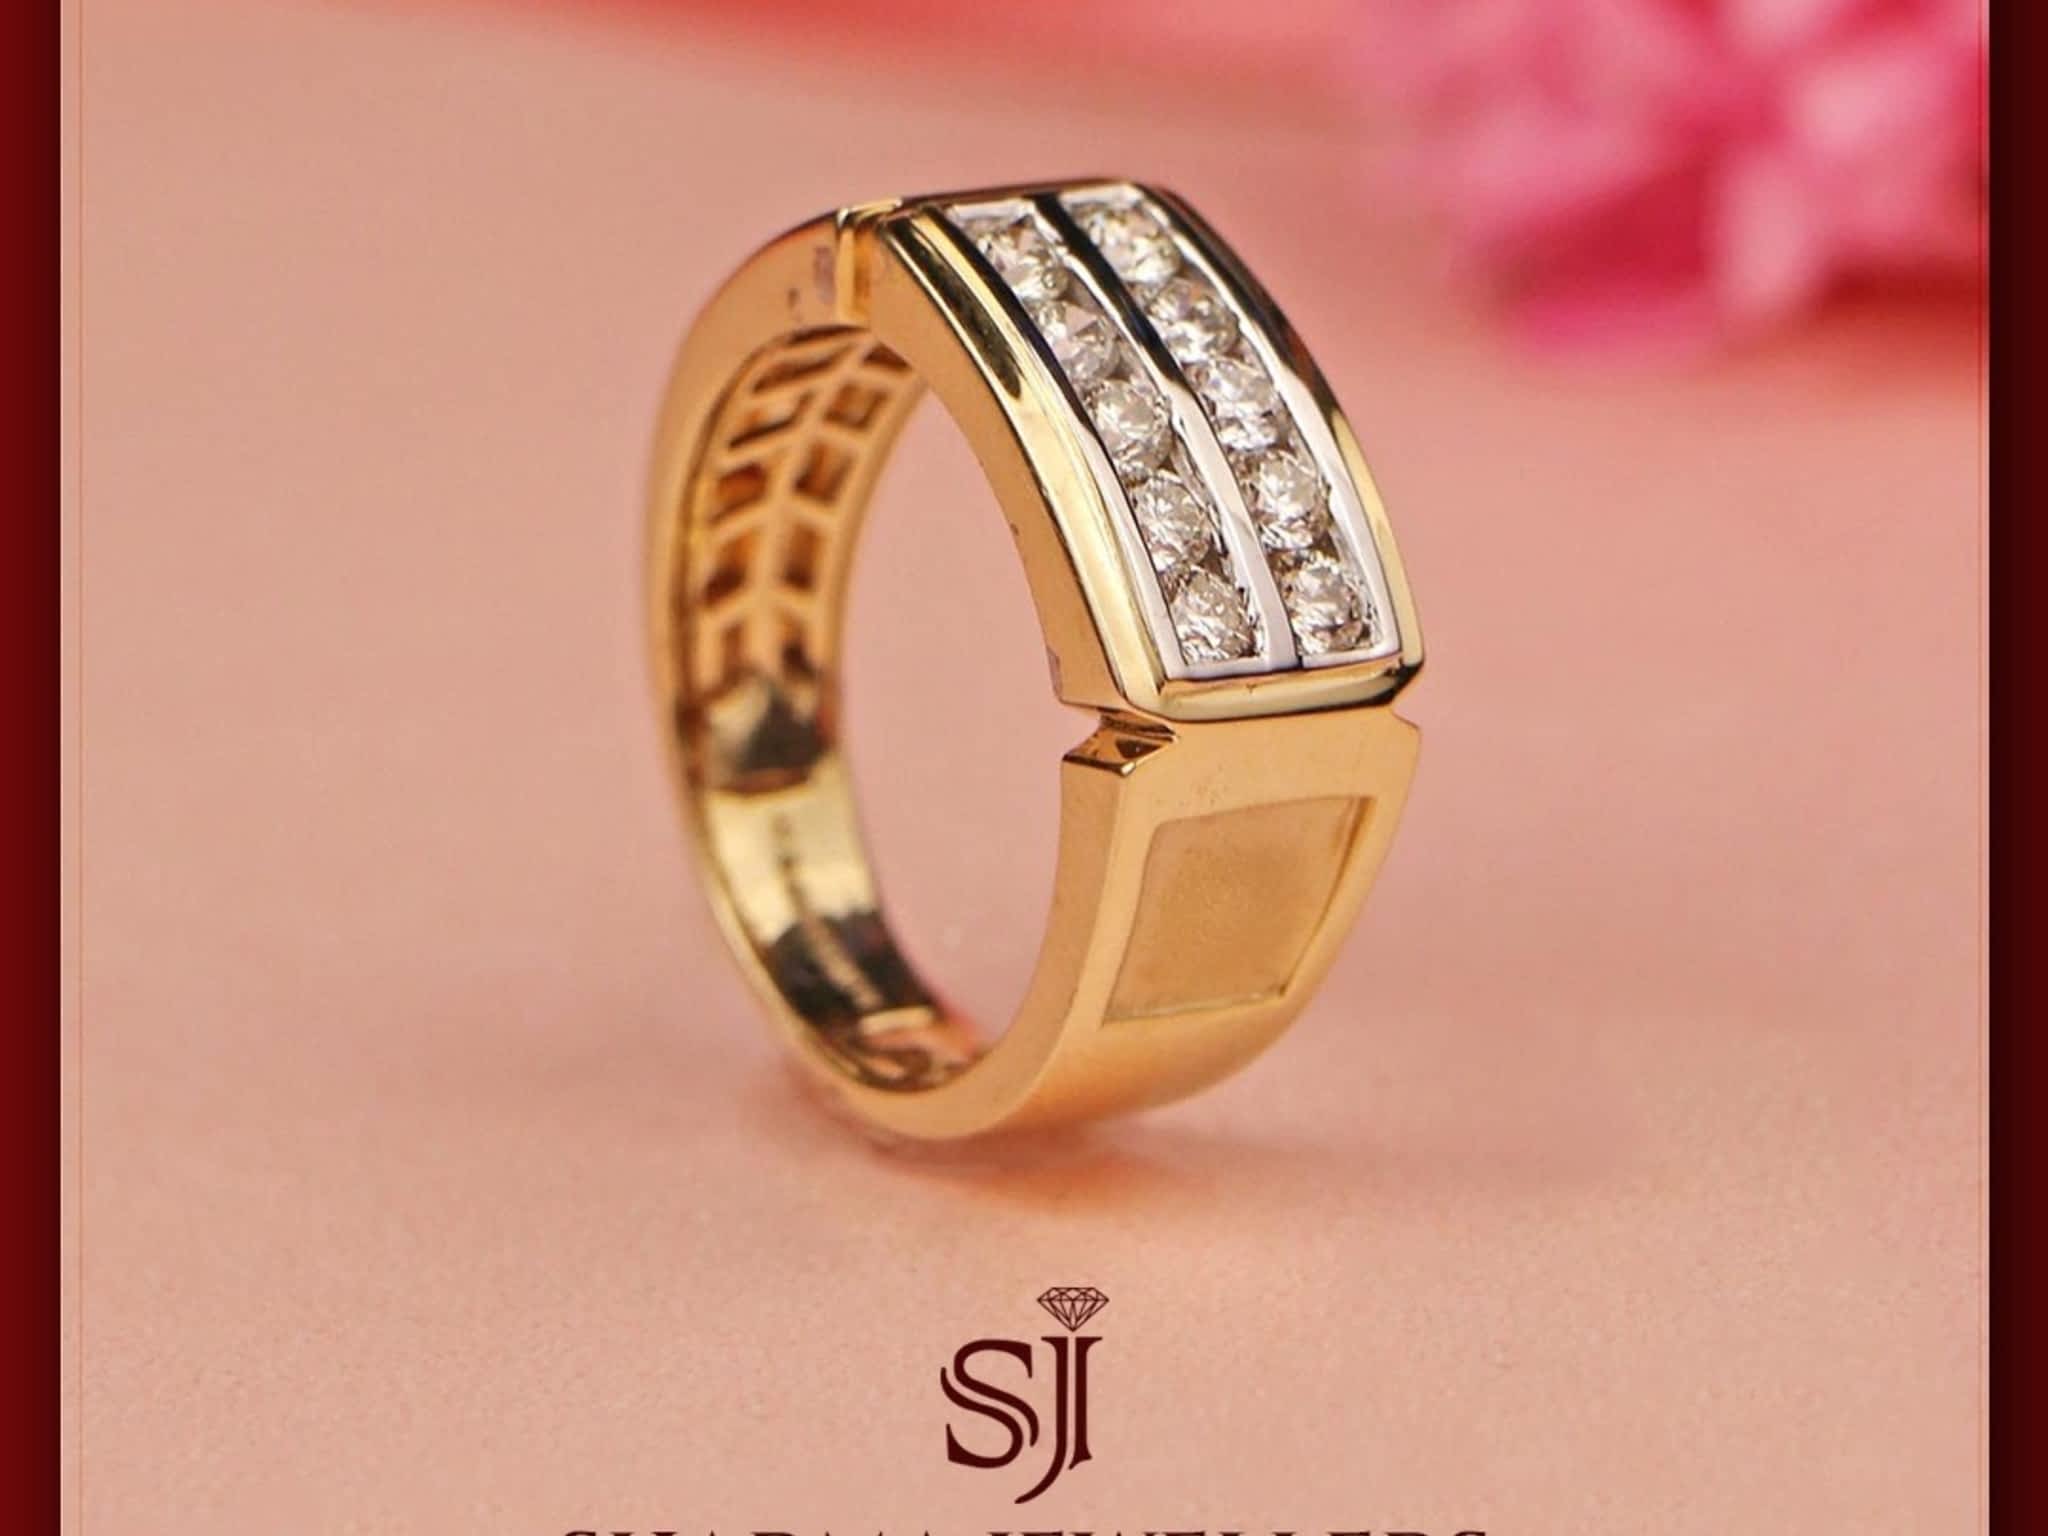 photo Sharma Jewellers Limited